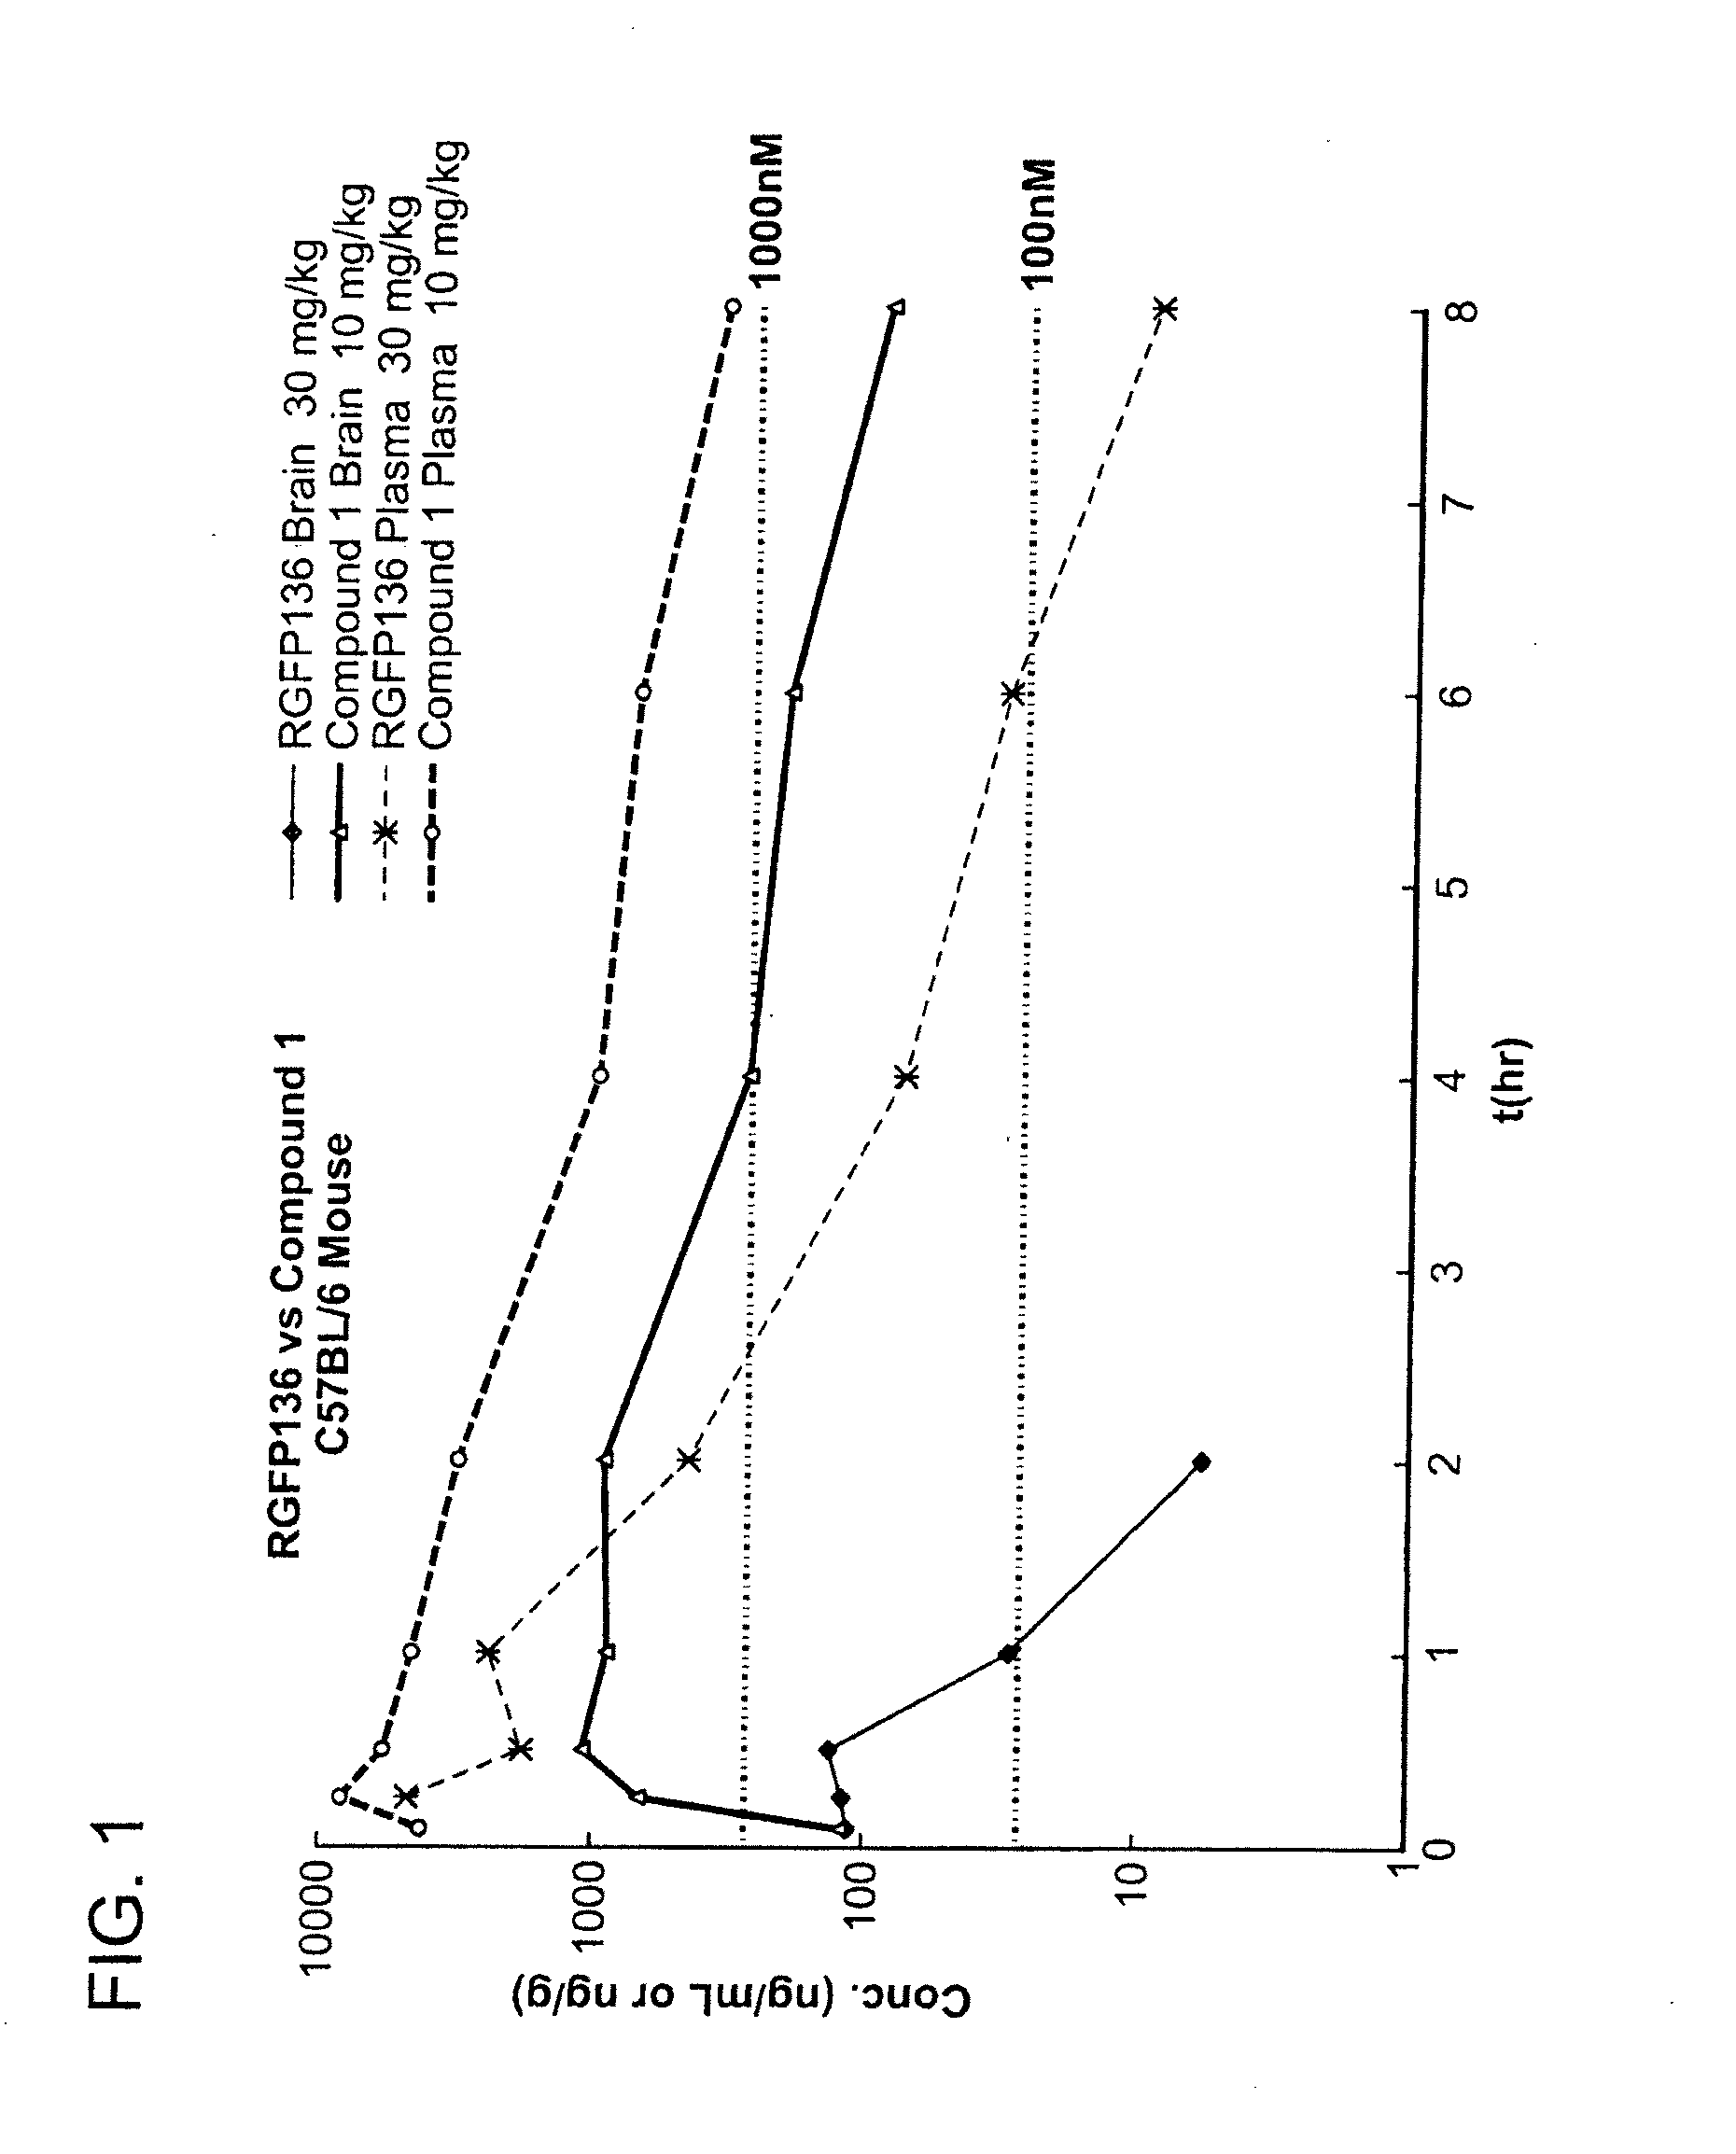 Inhibitors of histone deacetylase